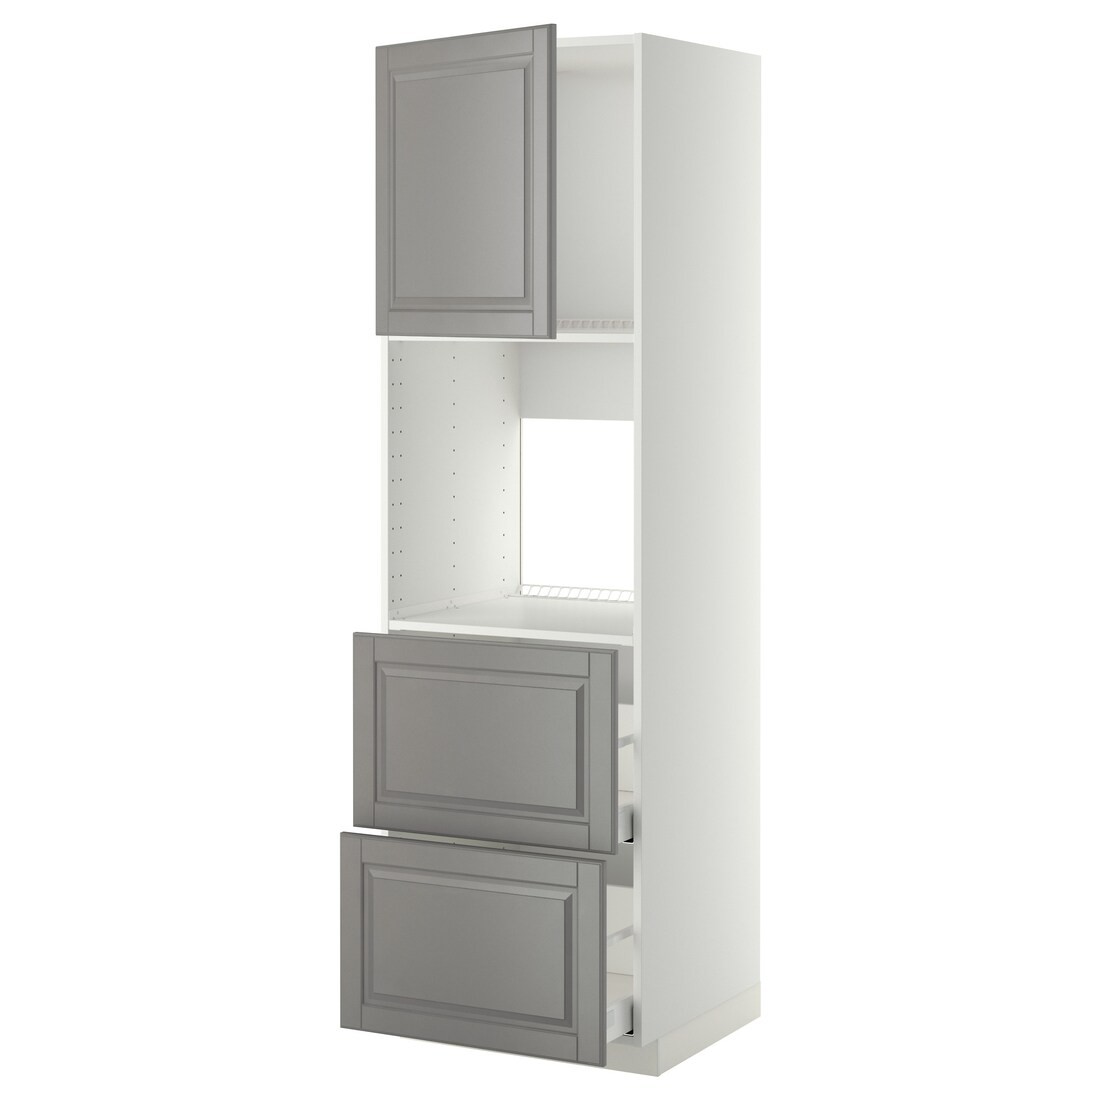 METOD МЕТОД / MAXIMERA МАКСИМЕРА Высокий шкаф для духовки с дверцей / ящиками, белый / Bodbyn серый, 60x60x200 см